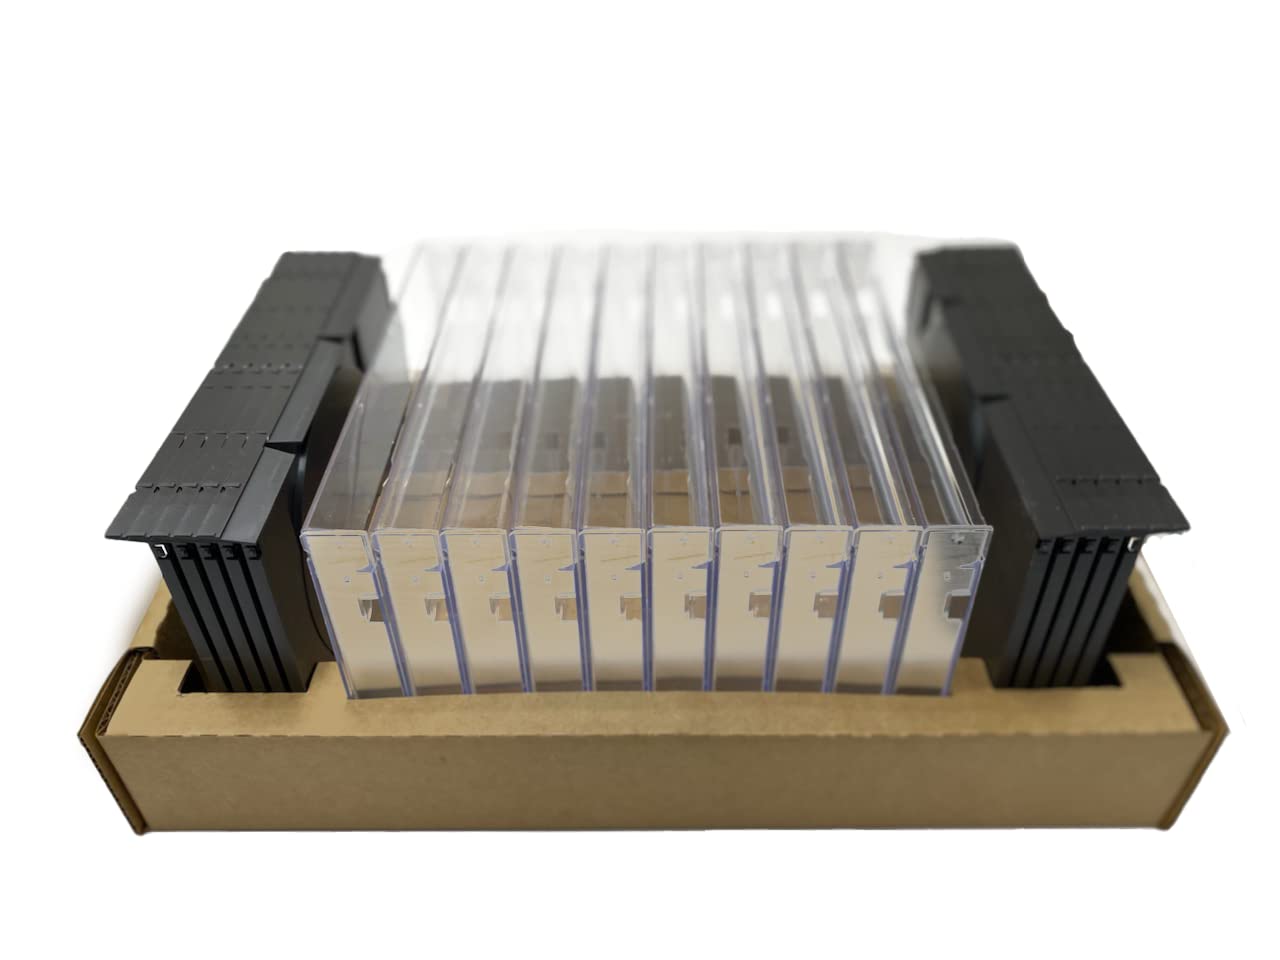 Sega Saturn/Sega CD Replacement Jewel Cases (10 Pack)